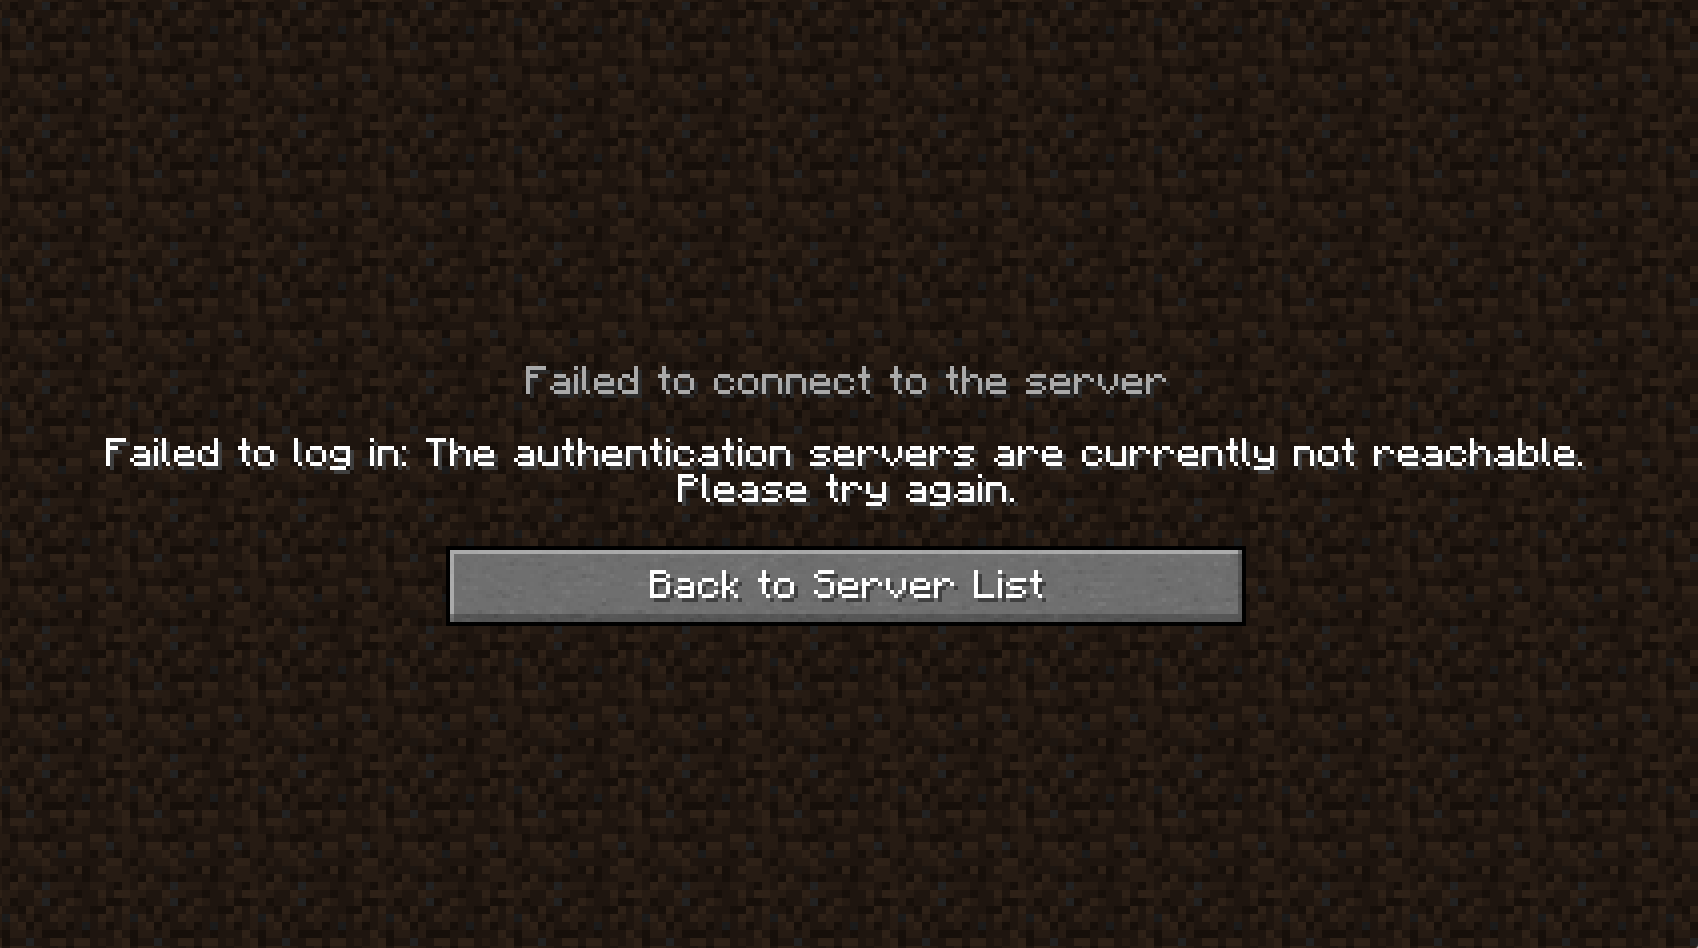 System ioexception. Ошибка при подключении к серверу. Что делать если не подключается к серверу в Minecraft. Ошибки подключения к другу на сервер майнкрафт. Что делать если не удалось подключиться к серверу.